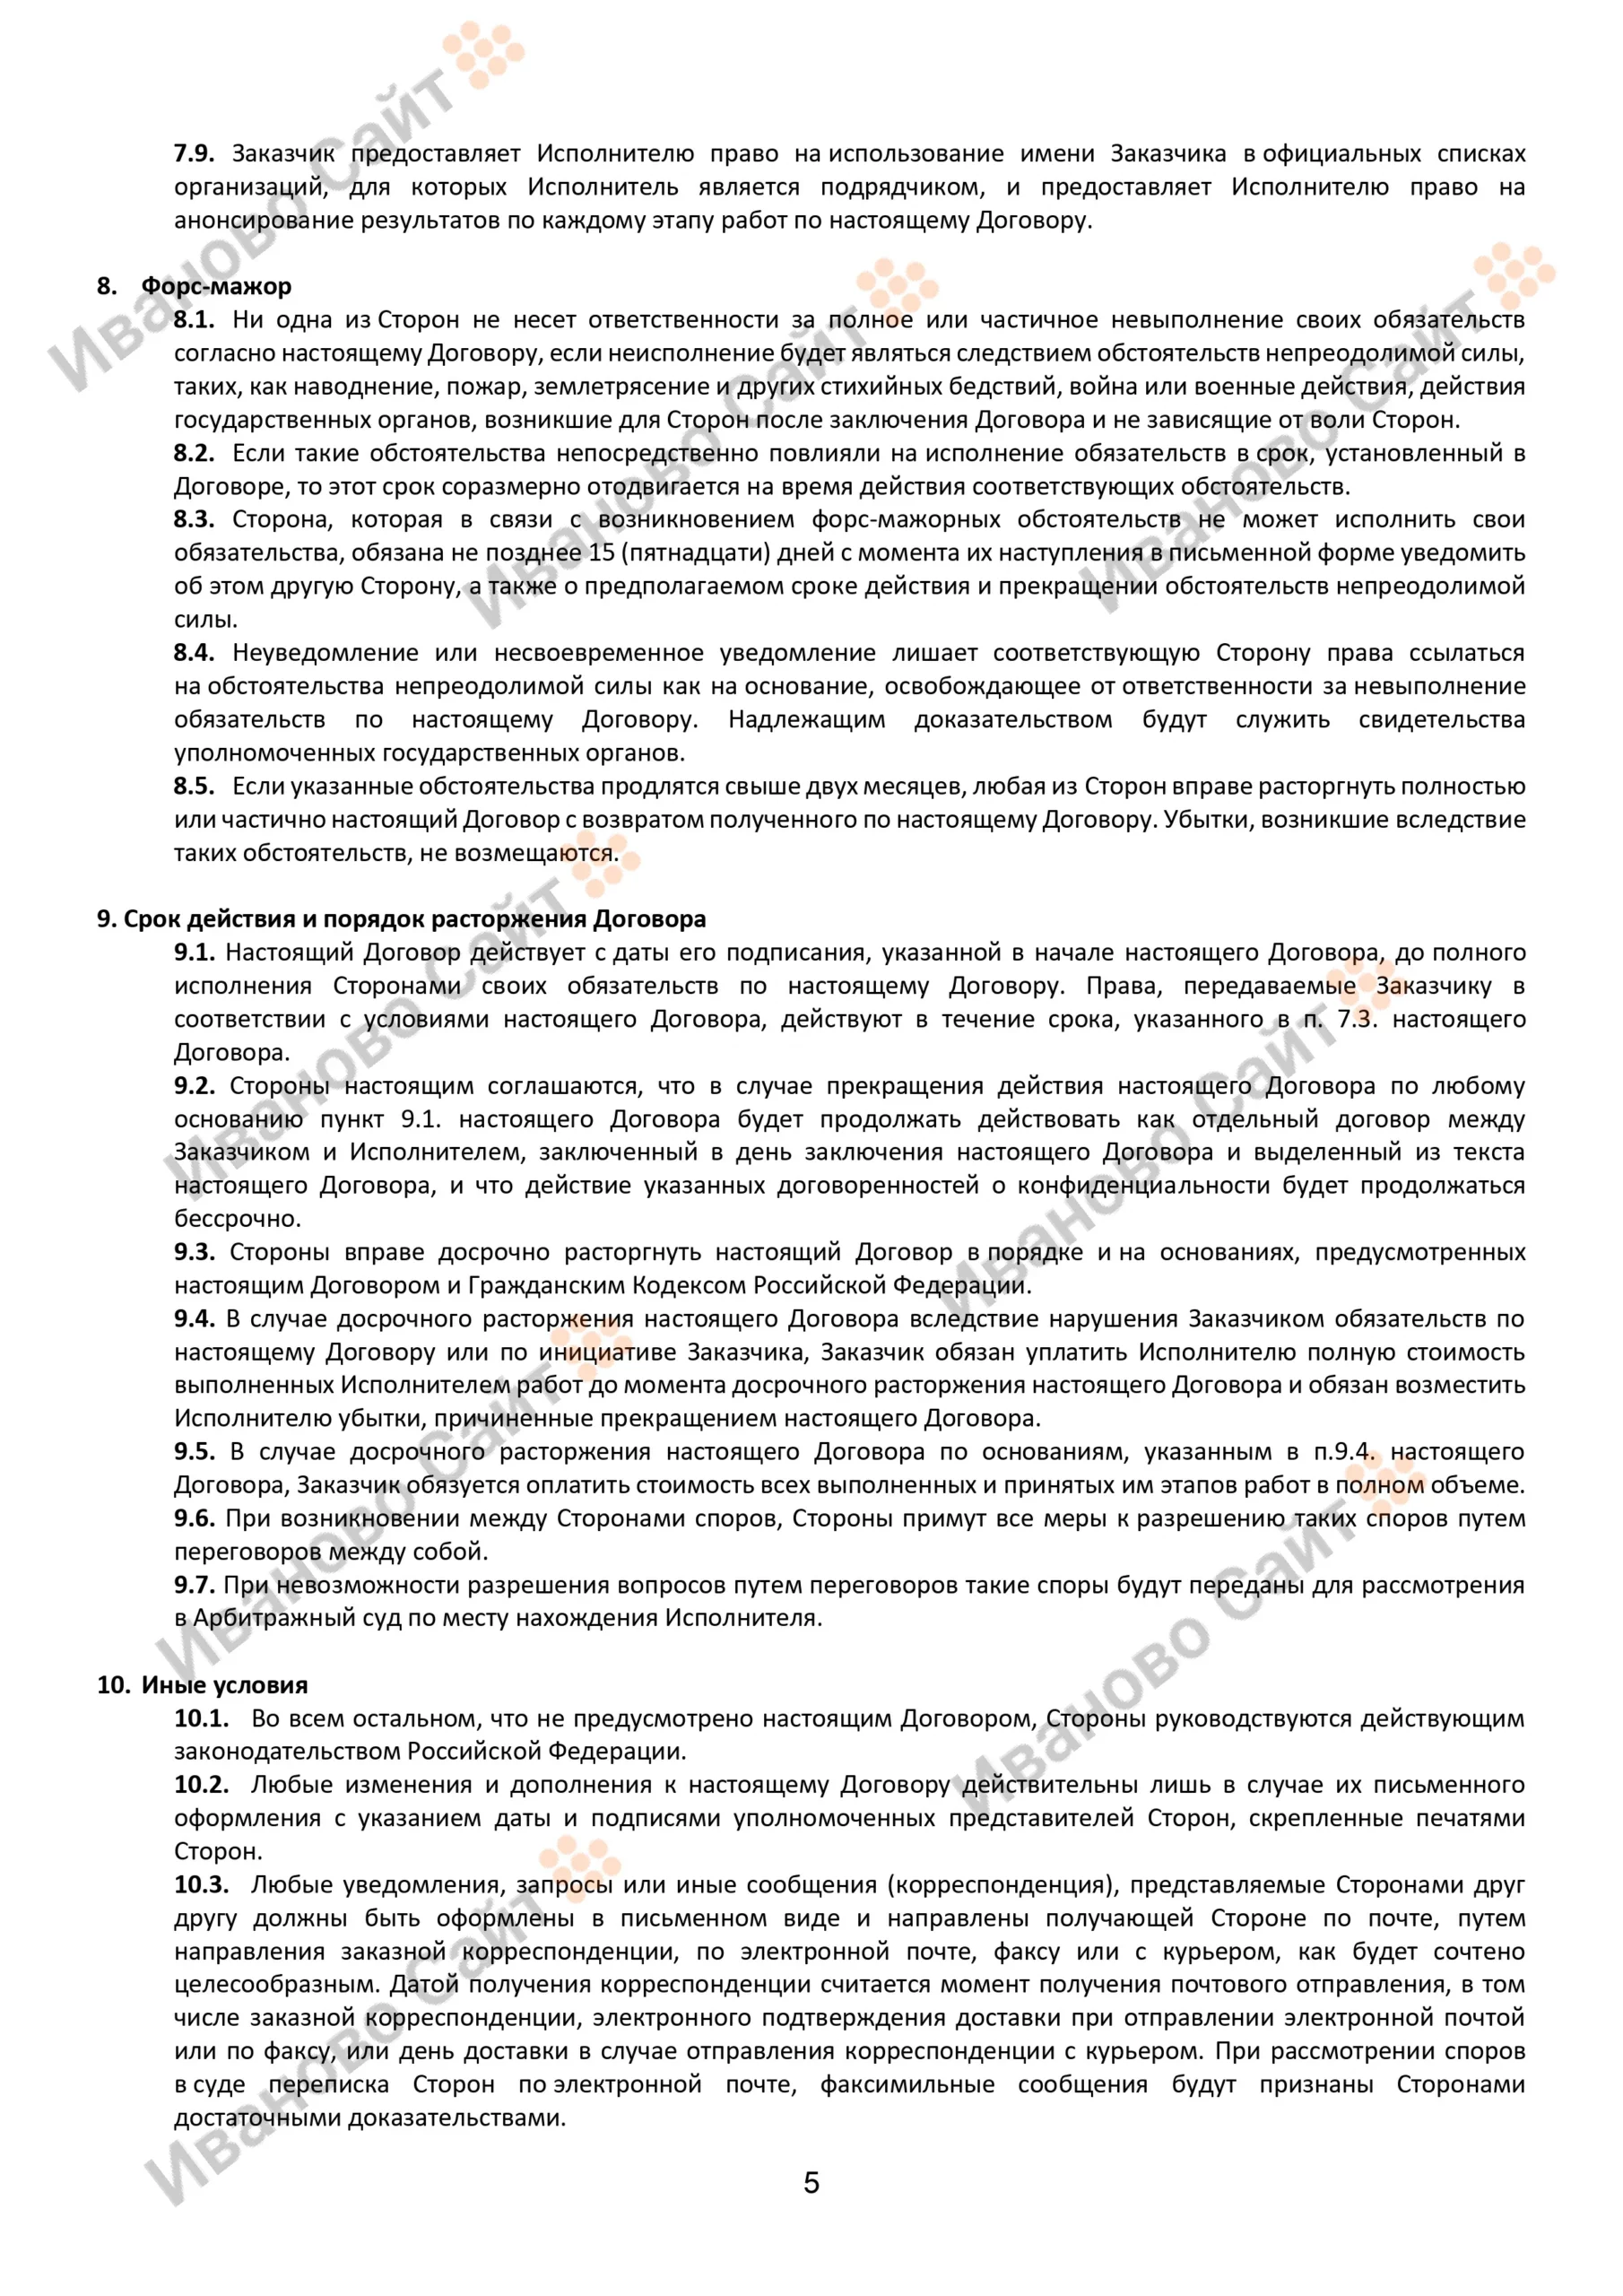 Образец договора на создание (разработку) сайта скачать страница 5